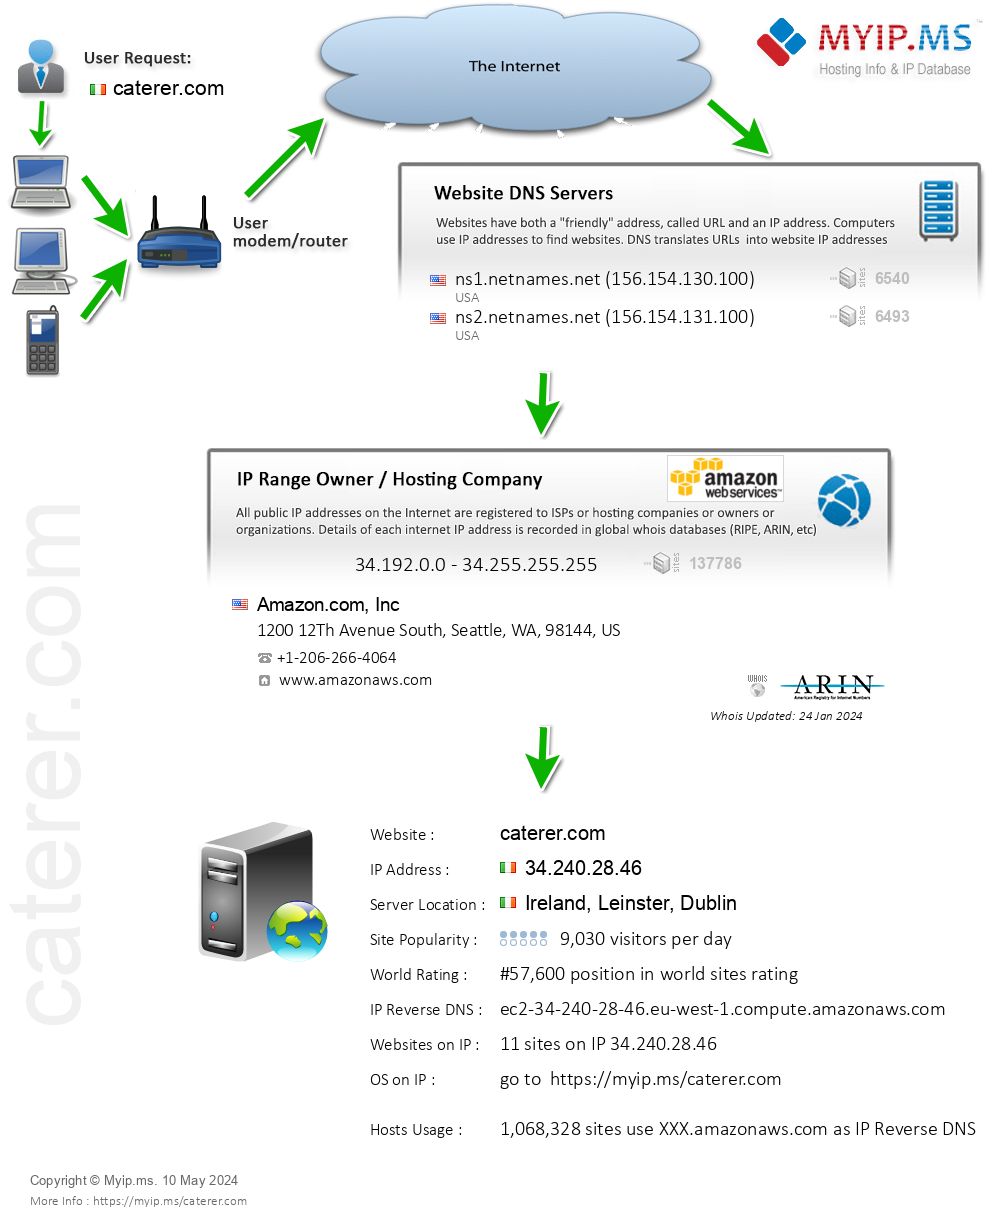 Caterer.com - Website Hosting Visual IP Diagram